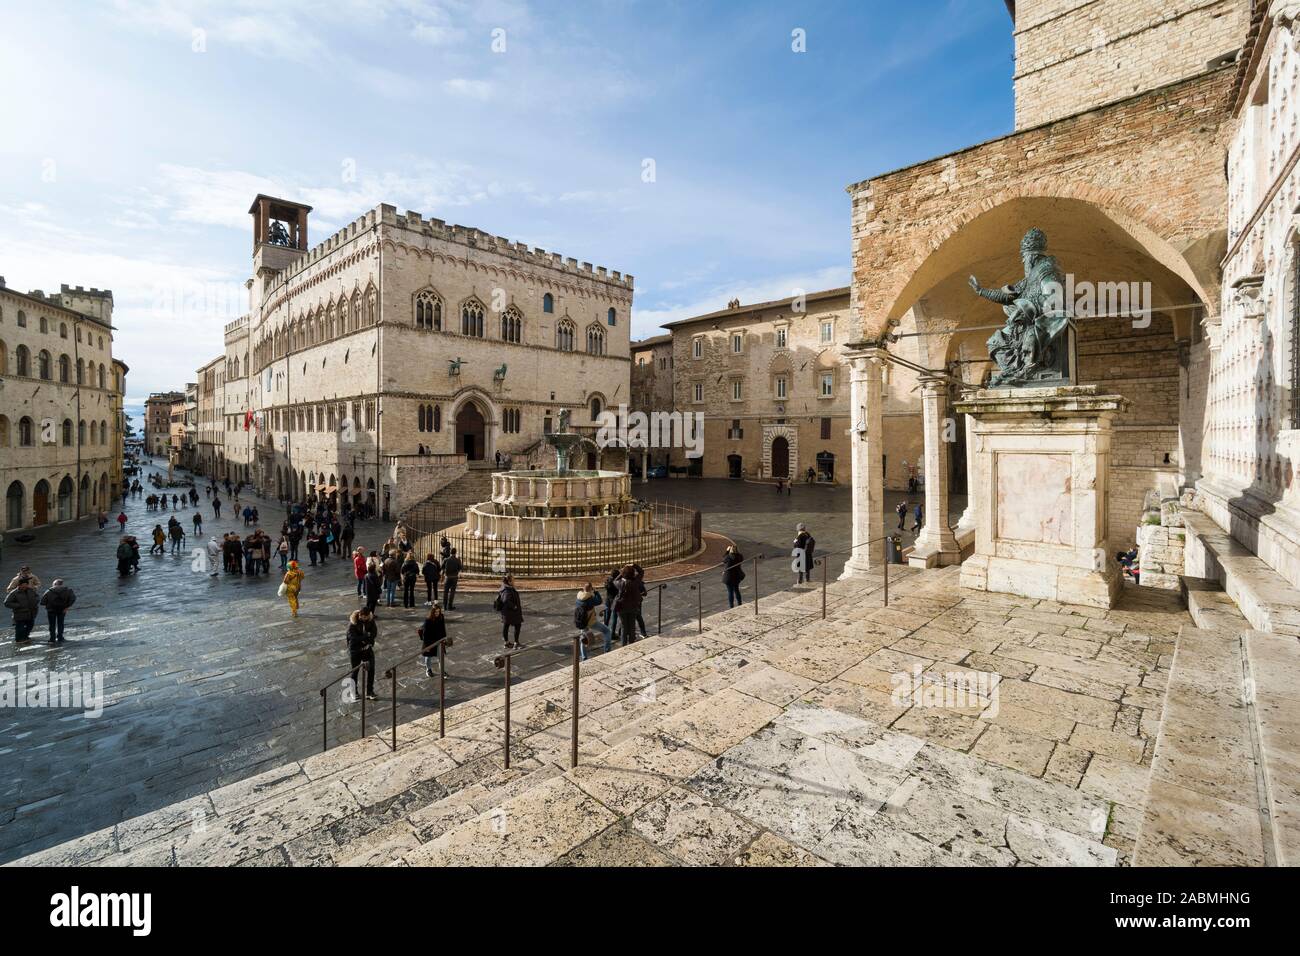 Perugia. Italy. The central Piazza IV Novembre, Corso Pietro Vannucci, Palazzo dei Priori (left), Fontana Maggiore (centre) and the Cattedrale di San Stock Photo